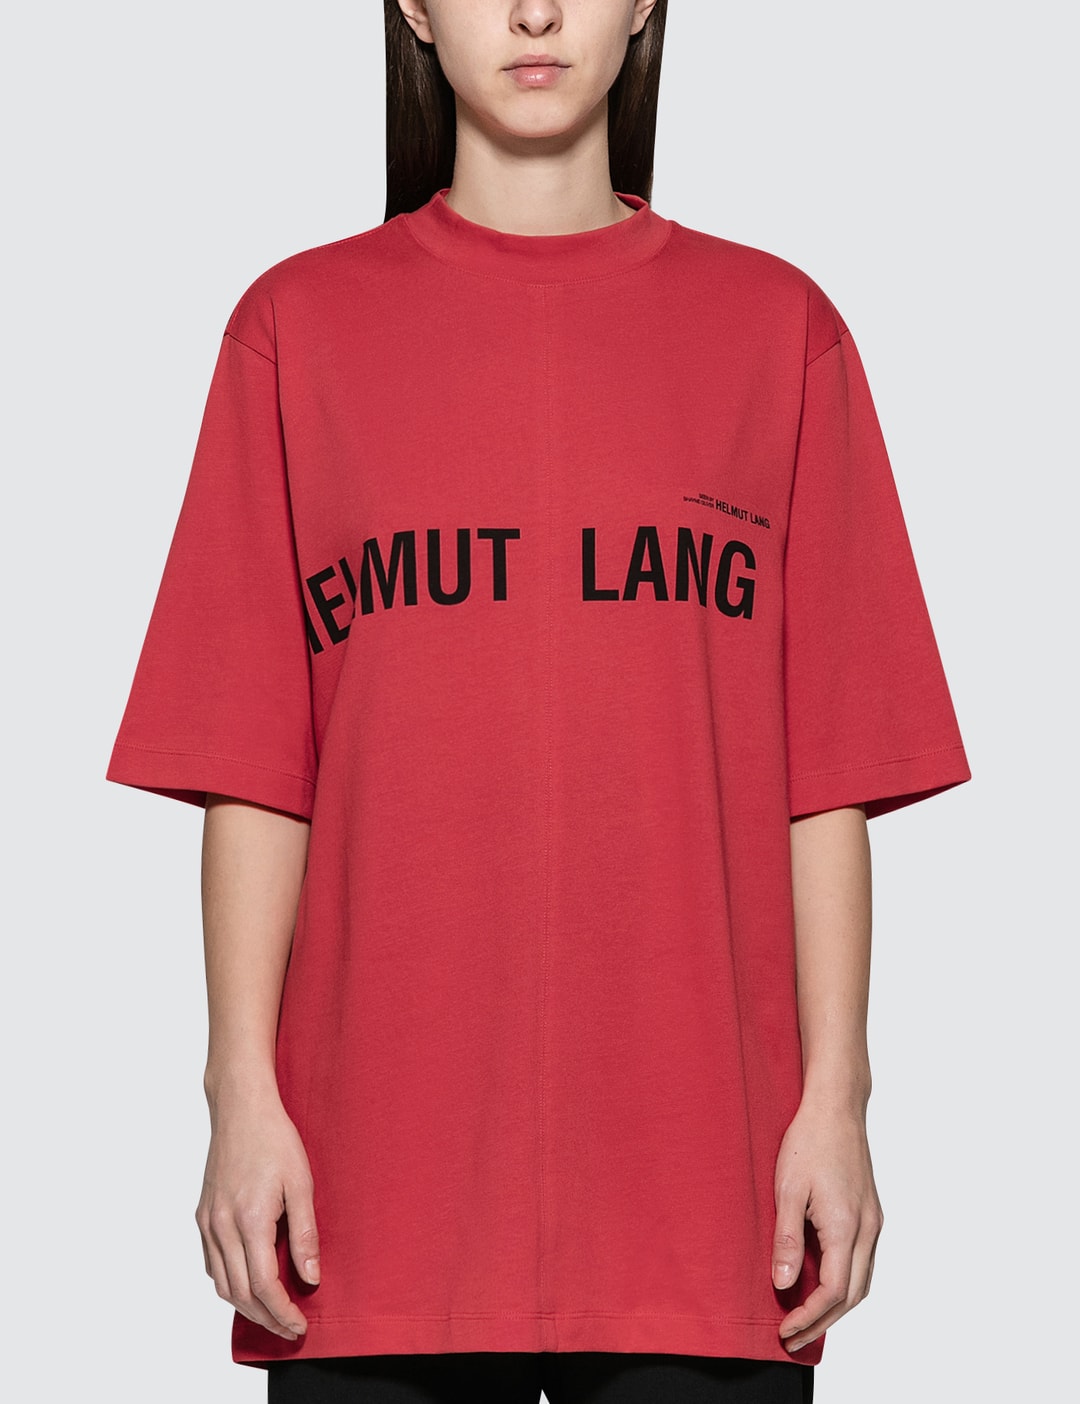 Helmut Lang - Campaign PR S/S T-Shirt